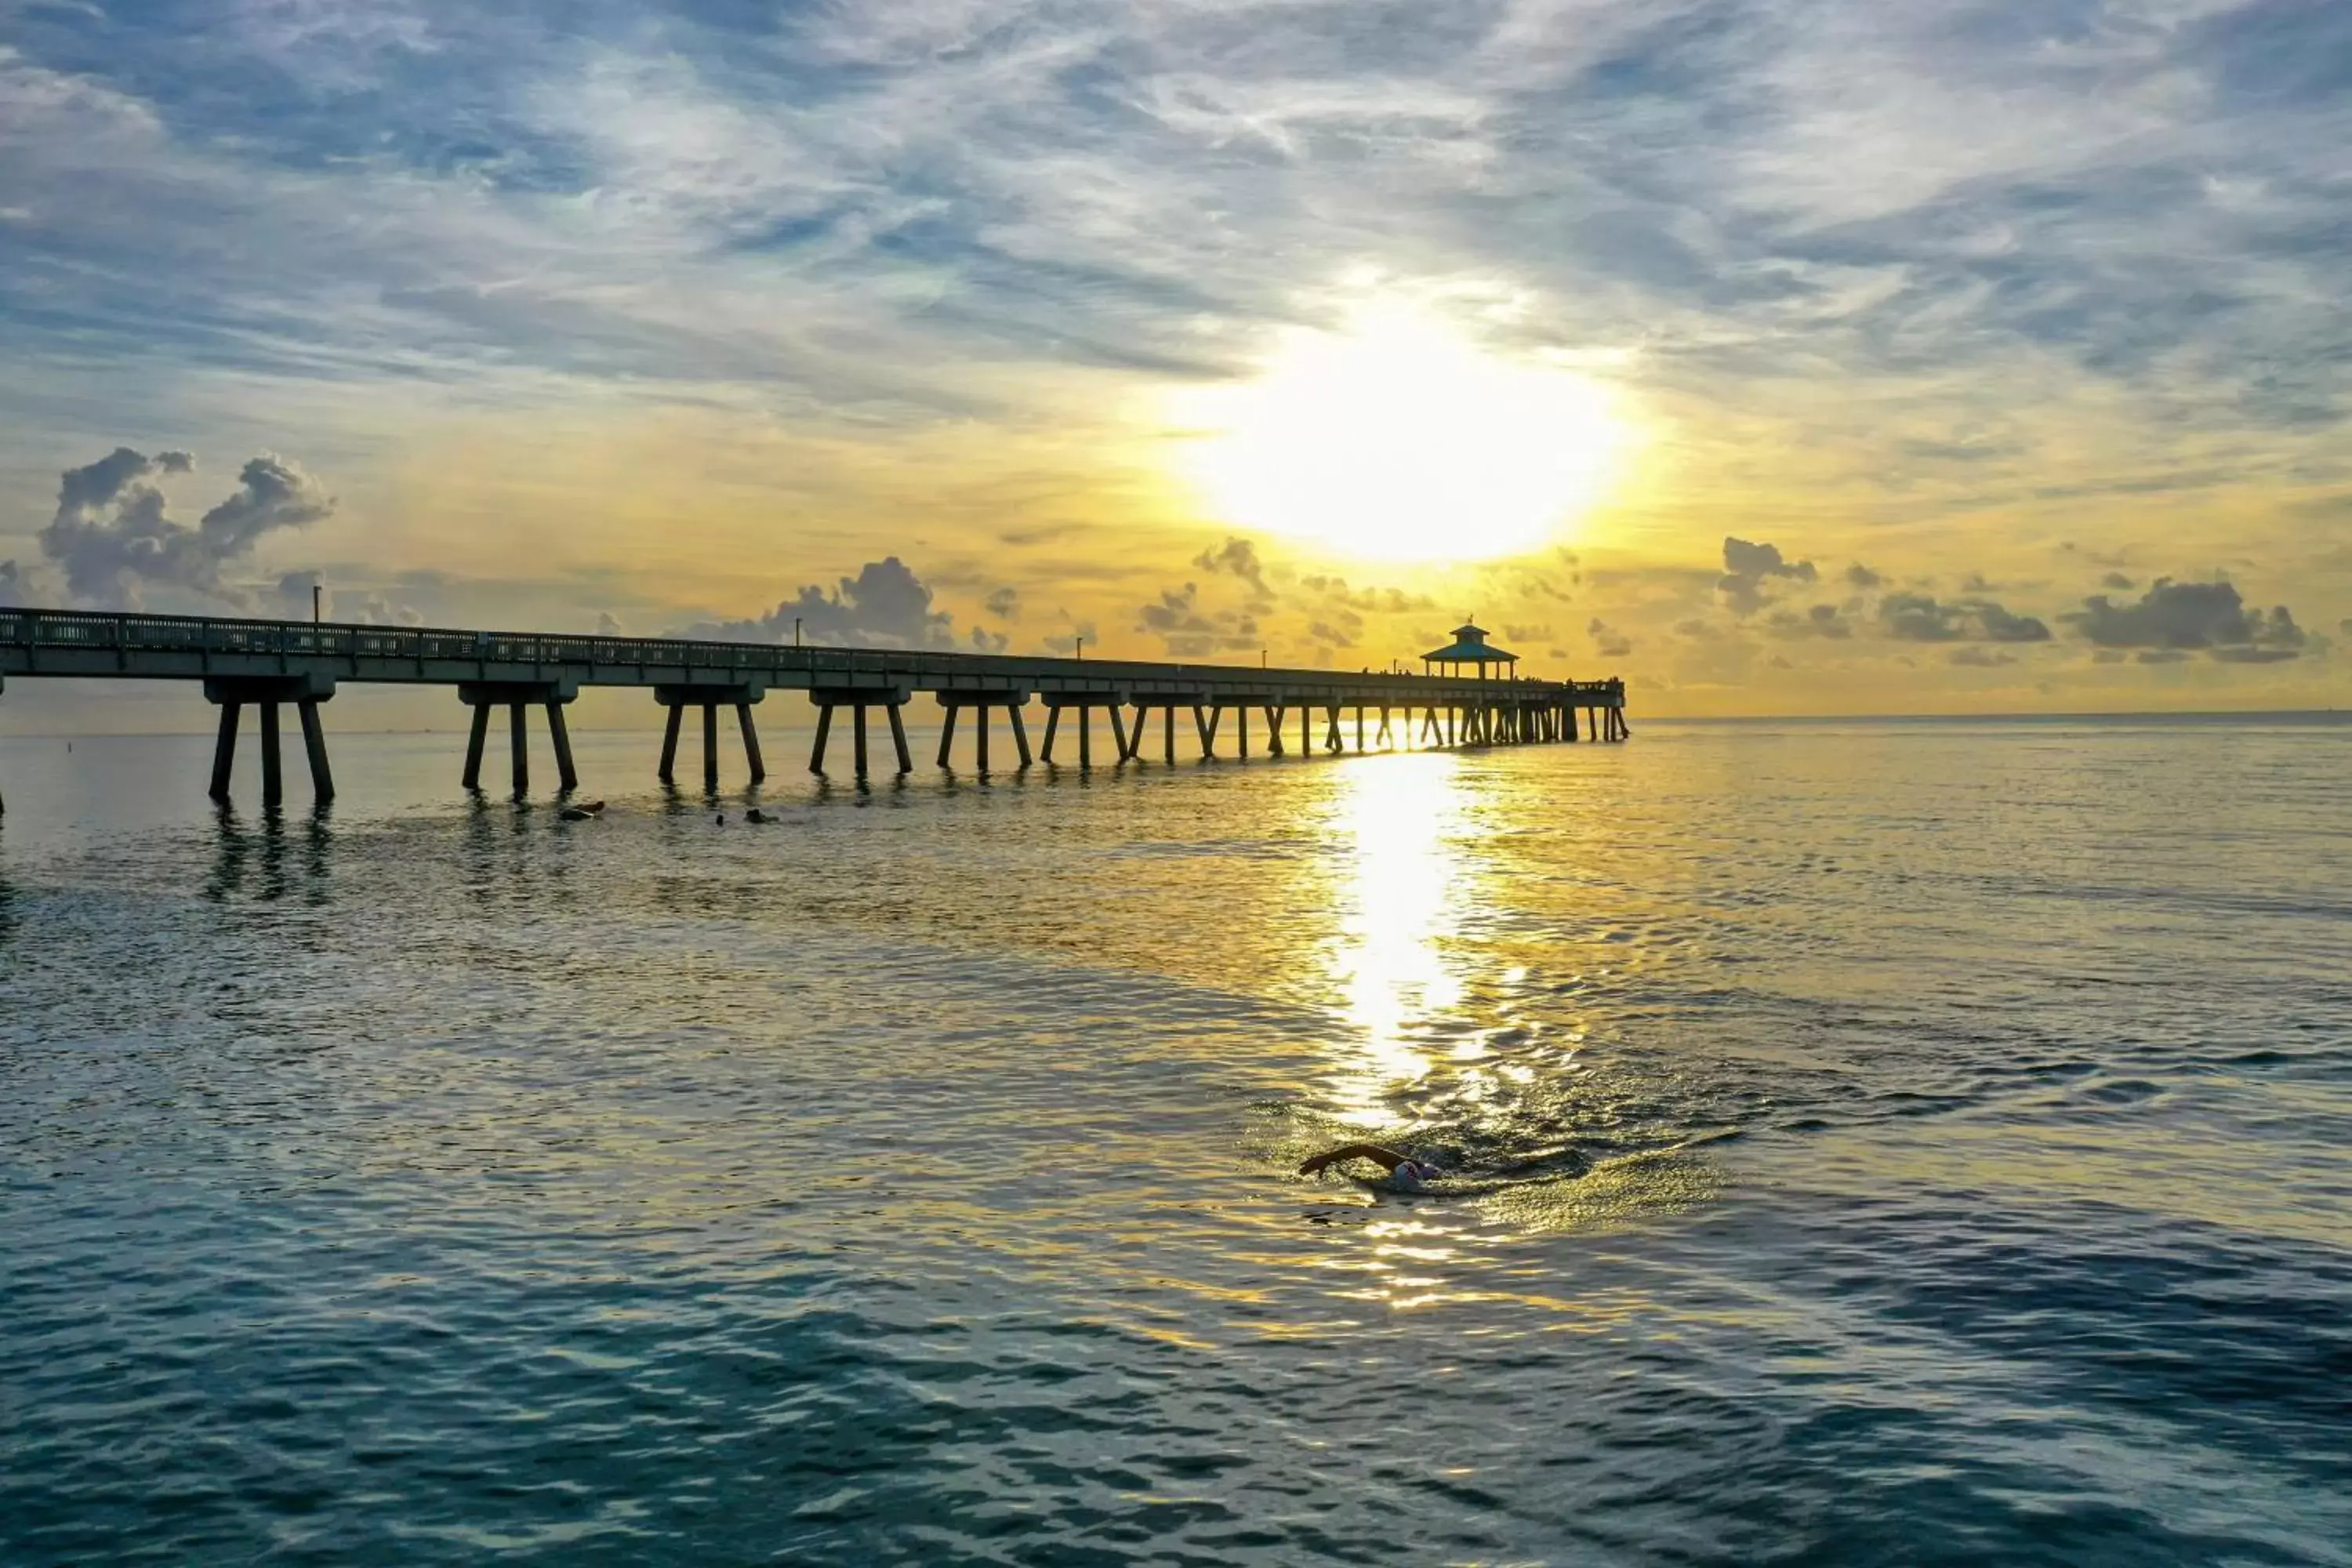 Sunrise/Sunset in Tropic Isle Beach Resort